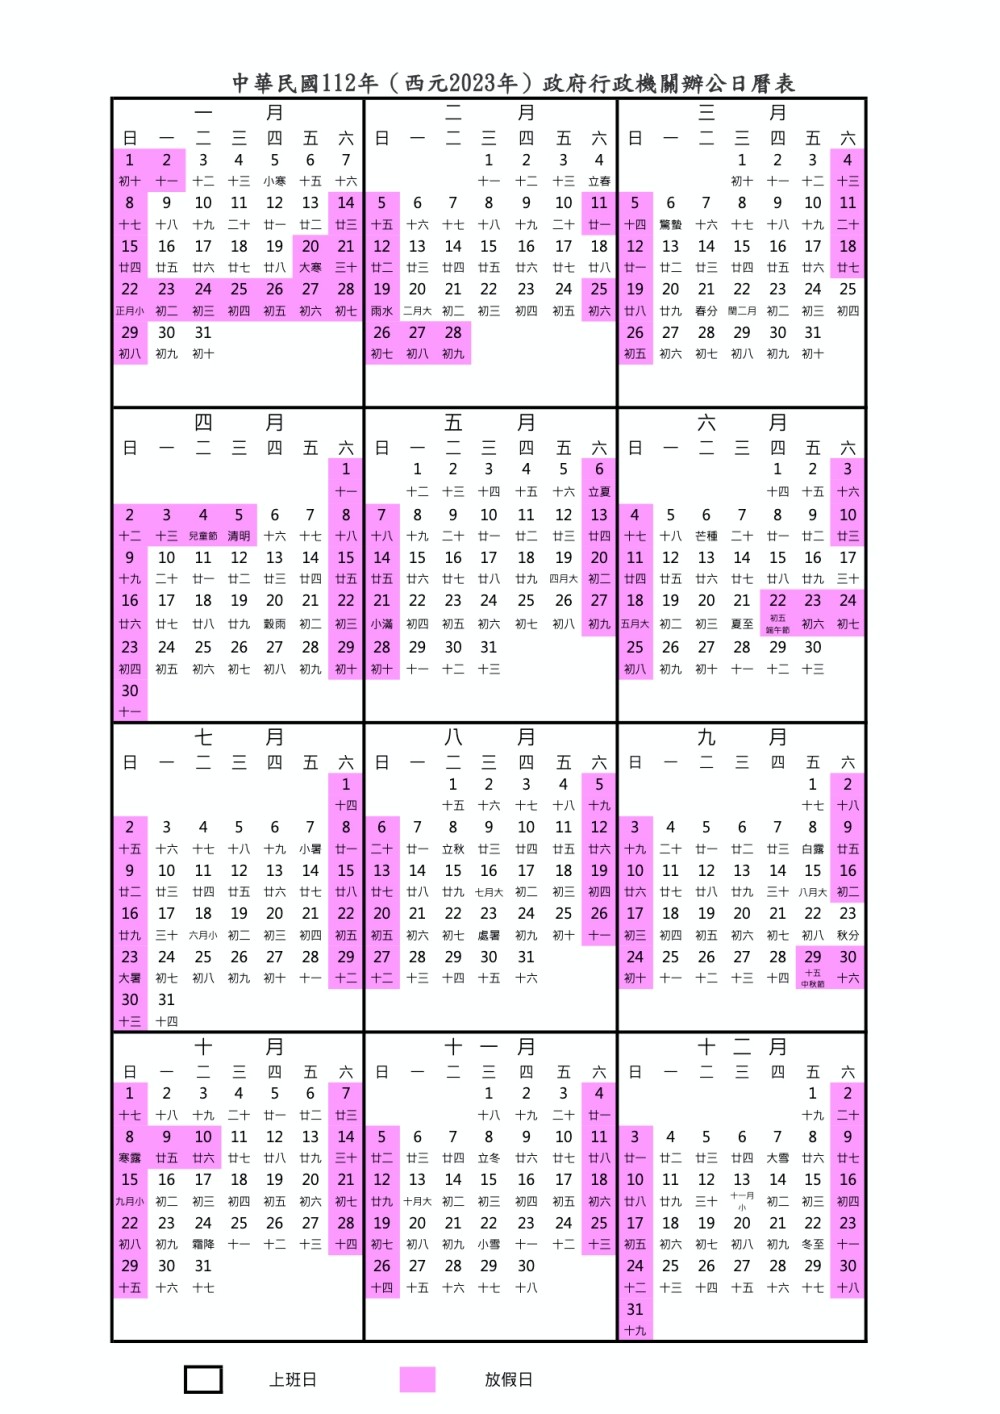 2023請假攻略》請2天休9天！行事曆一張圖看懂過年連假、補班日